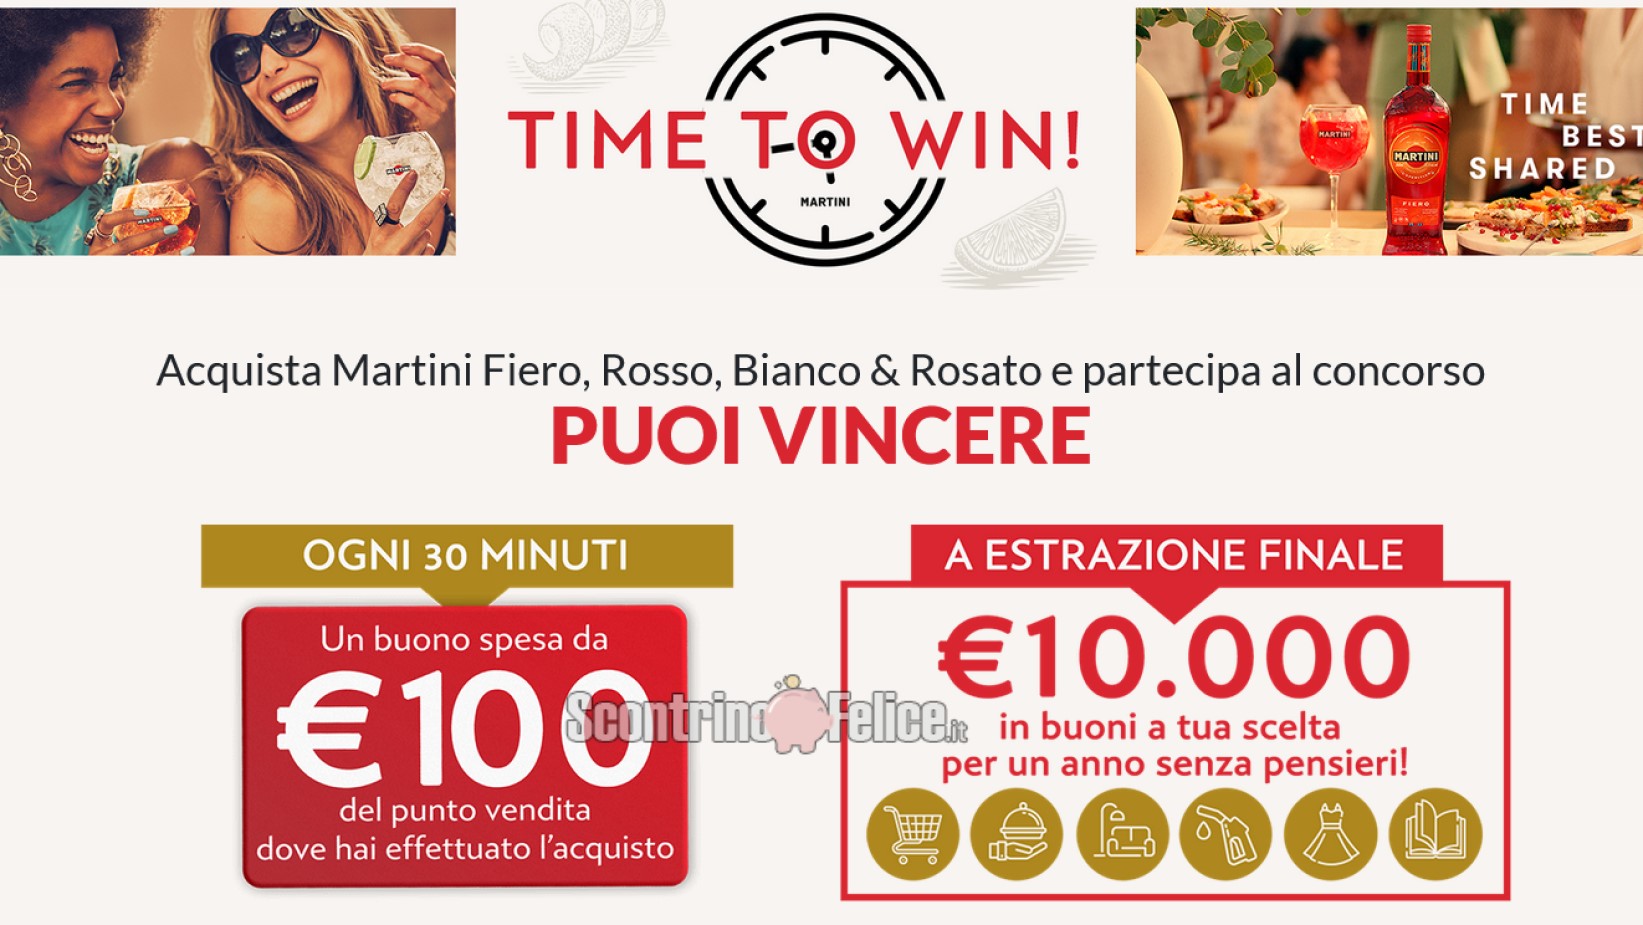 Concorso “Martini time to win”: in palio 1 buono spesa da 100 euro ogni 30 minuti e 10.000 euro in buoni acquisto a tua scelta!